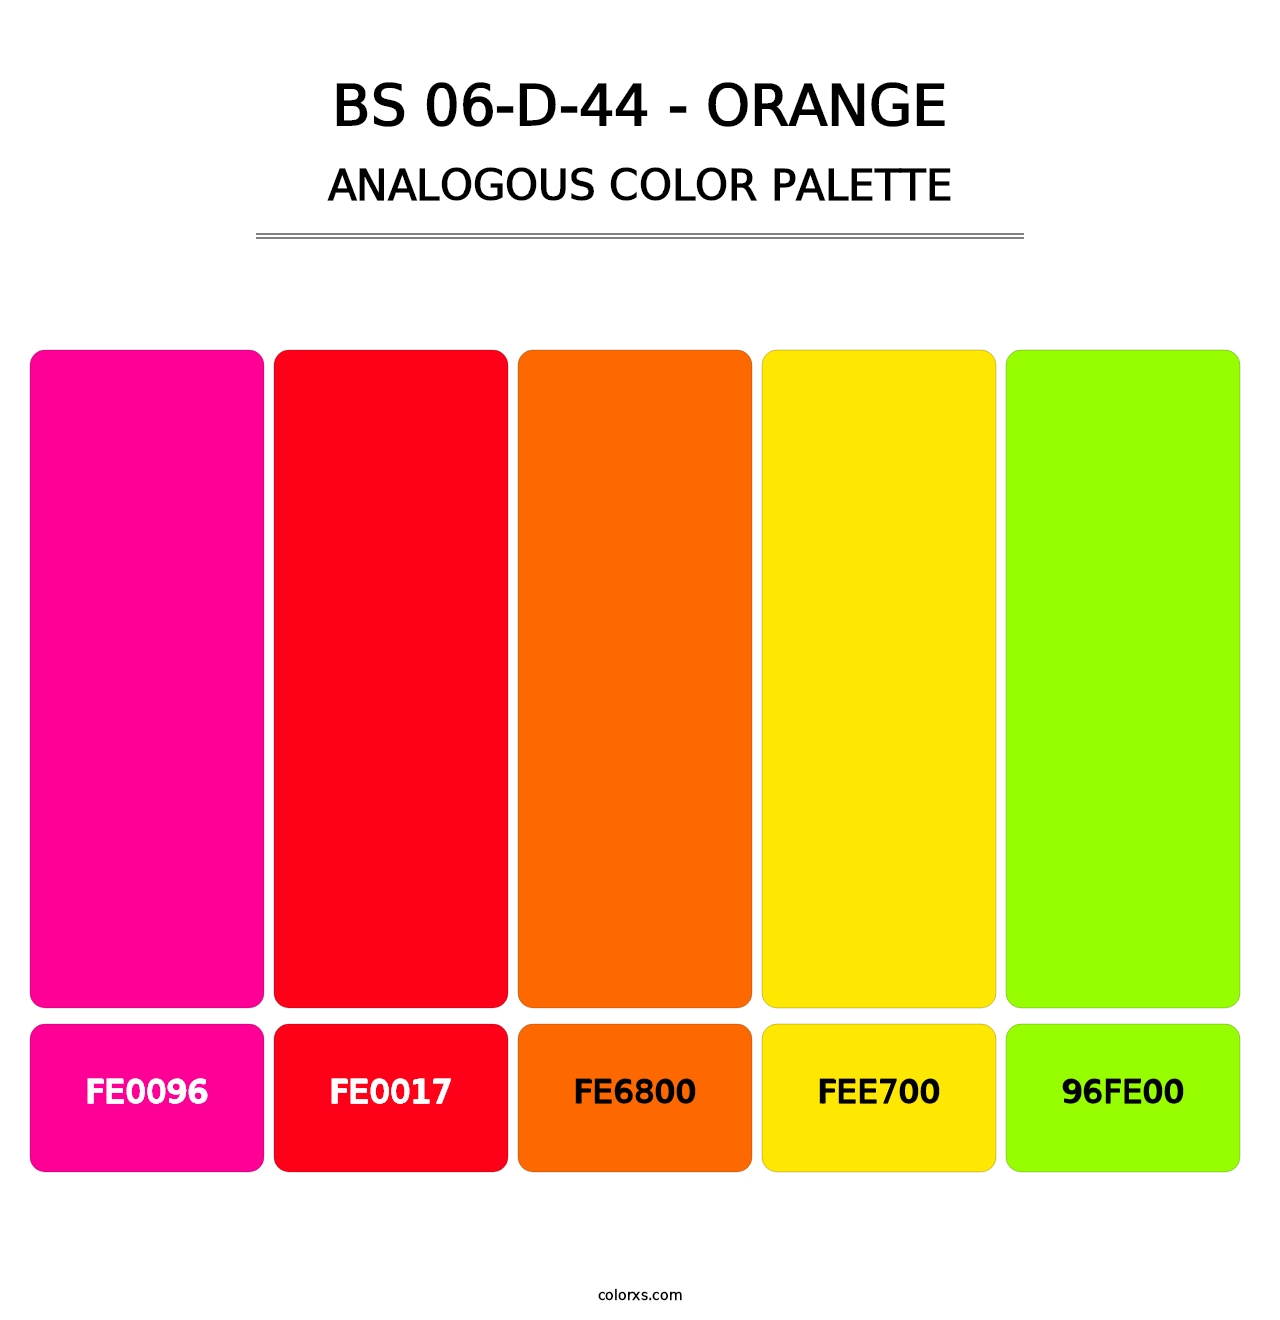 BS 06-D-44 - Orange - Analogous Color Palette